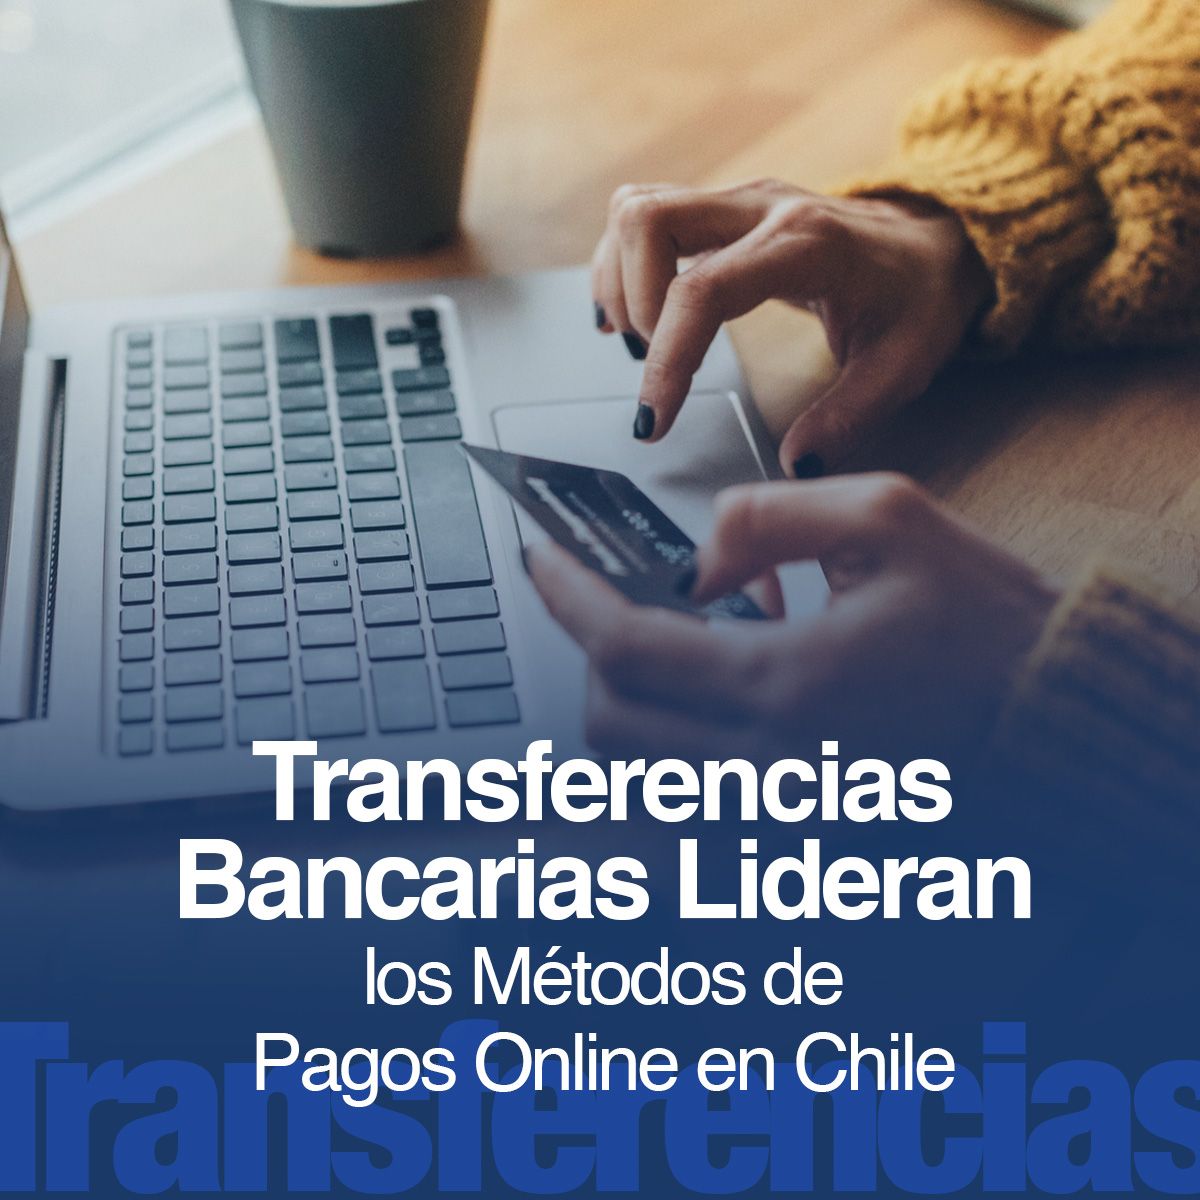 Transferencias Bancarias Lideran los Métodos de Pagos Online en Chile